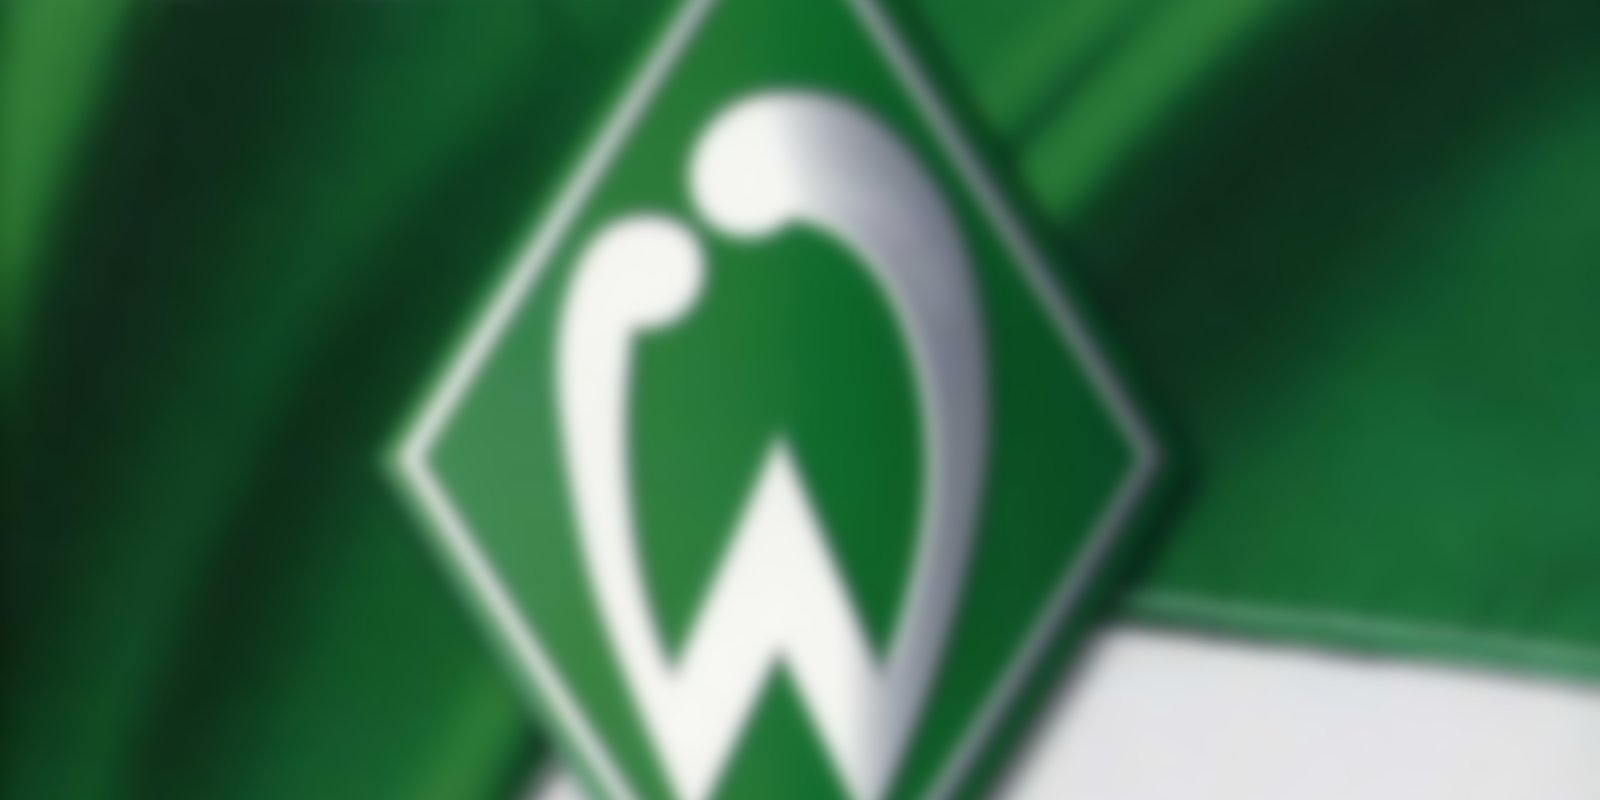 Werder Bremen - Die besten Spiele der Vereinsgeschichte - Teil 1